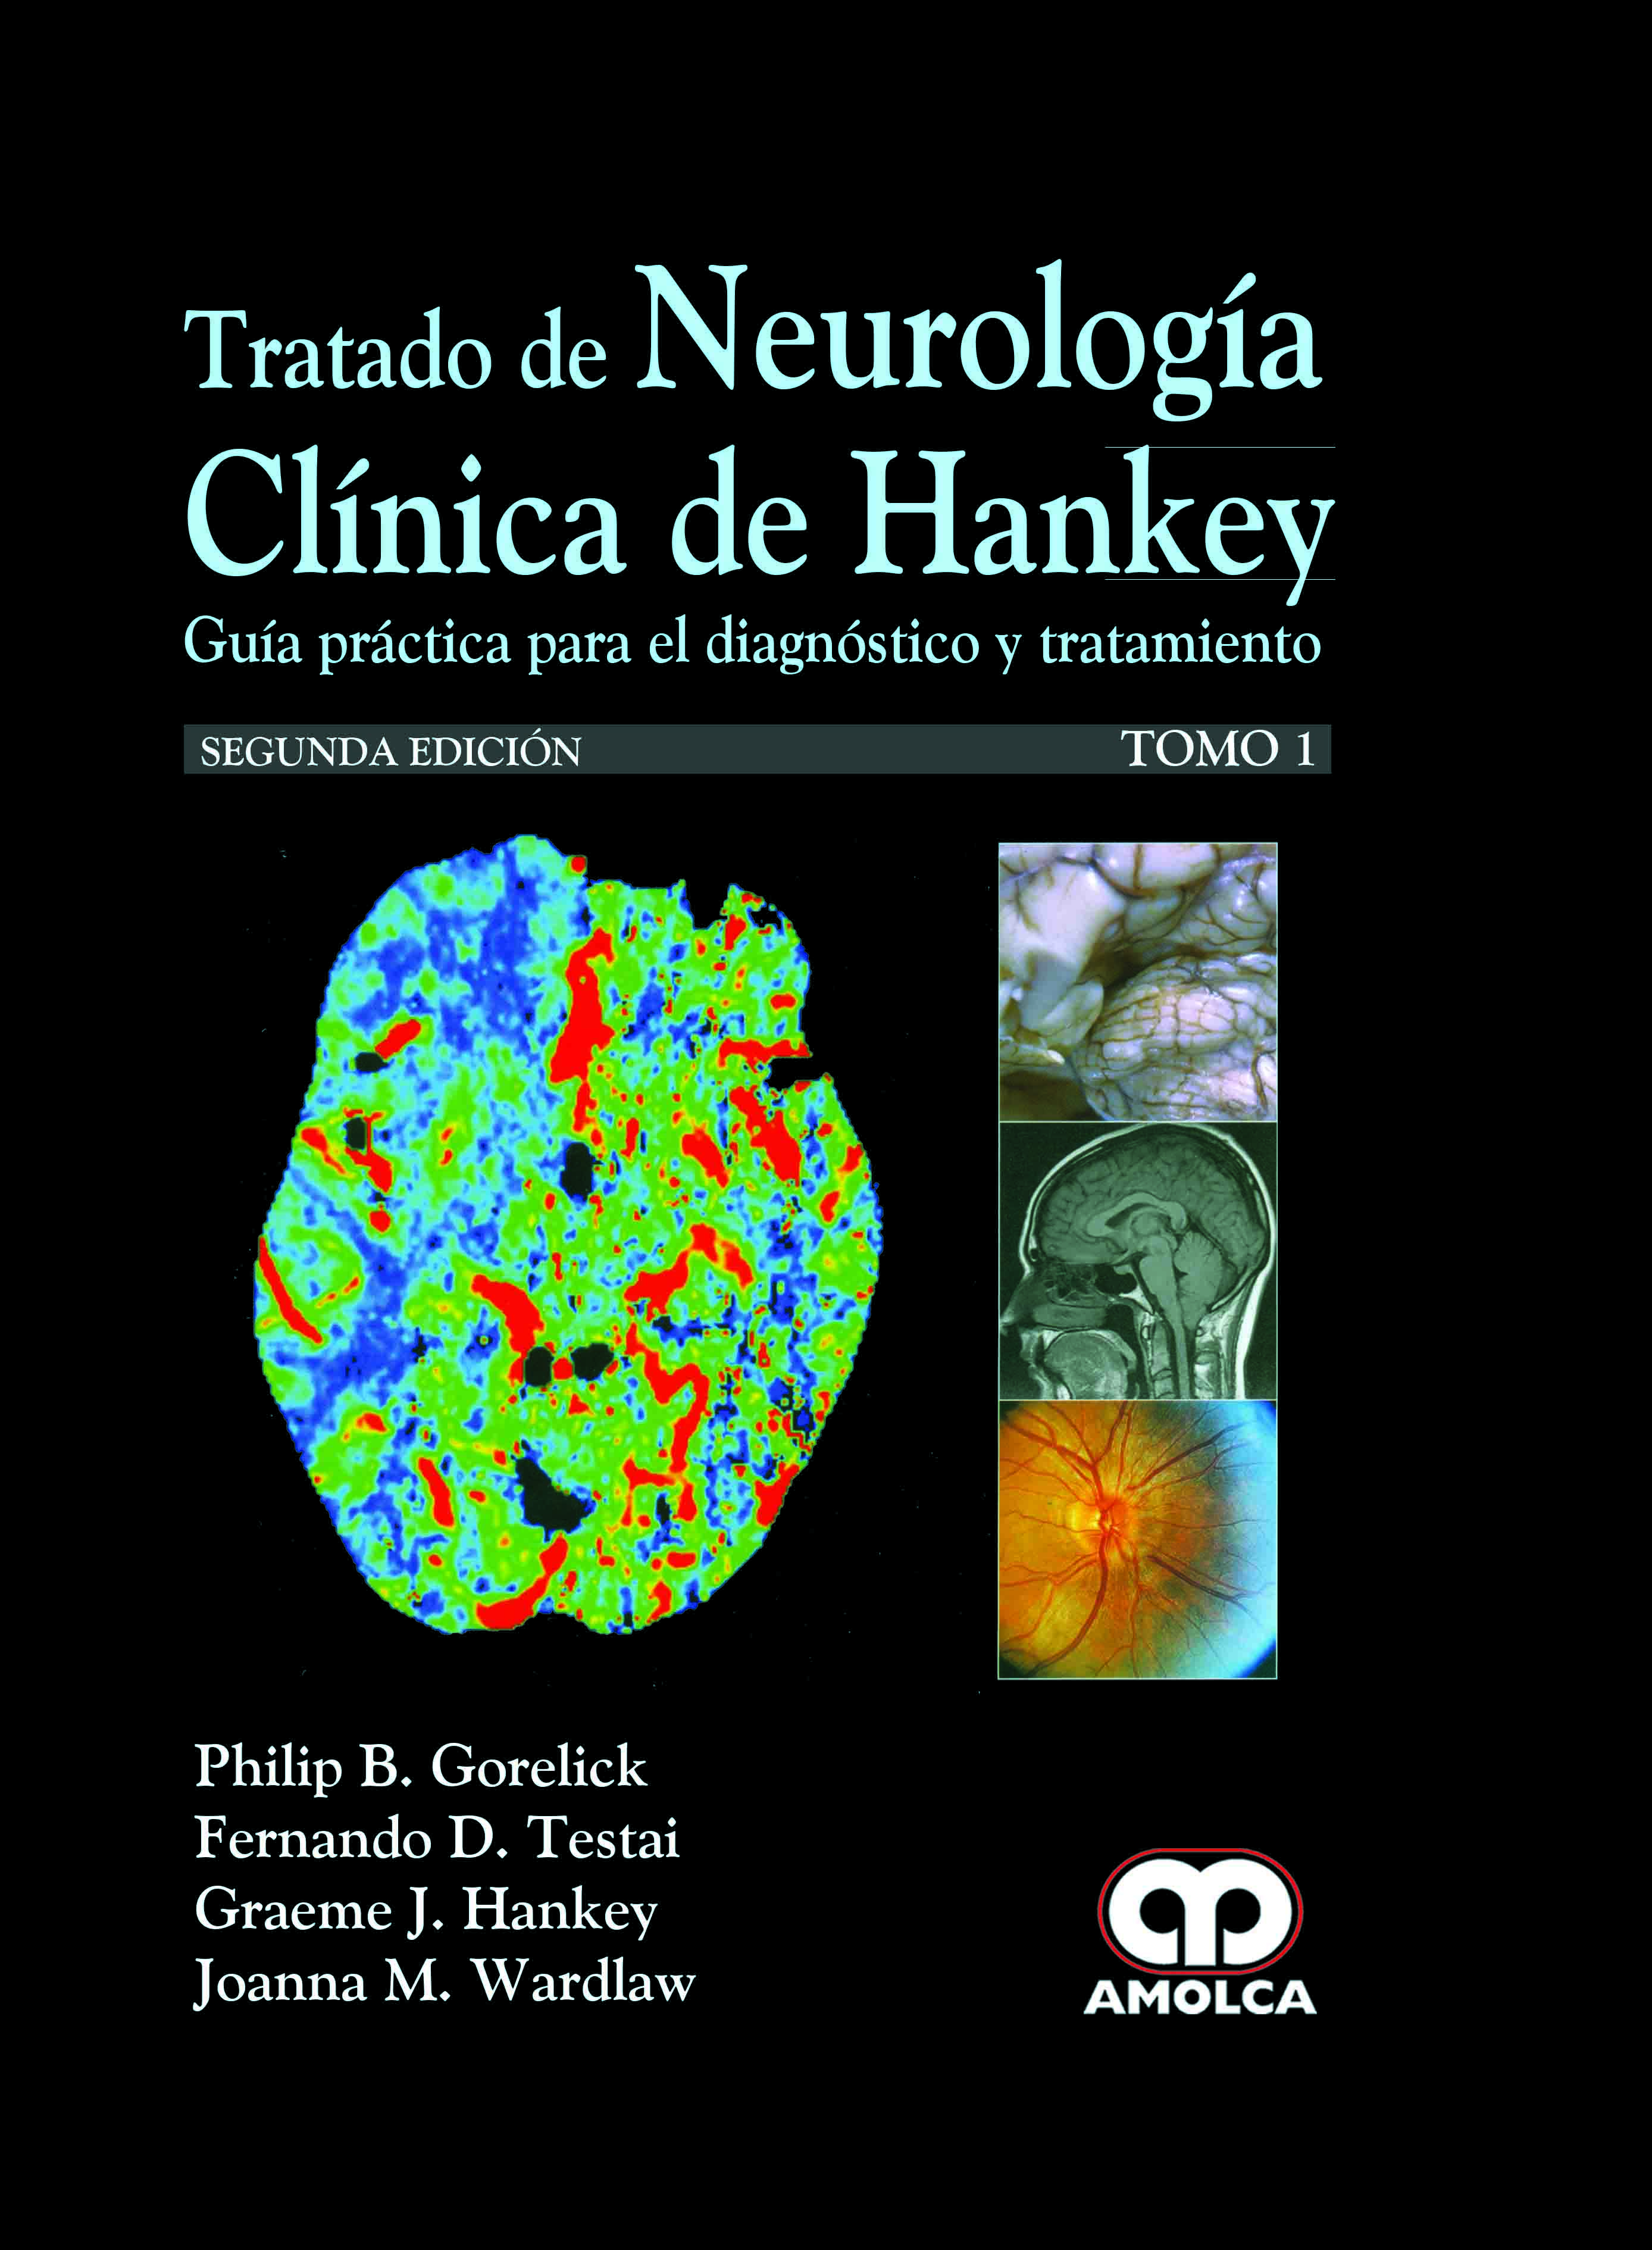 TRATADO DE NEUROLOGÍA CLÍNICA DE HANKEY. 2 Tomos